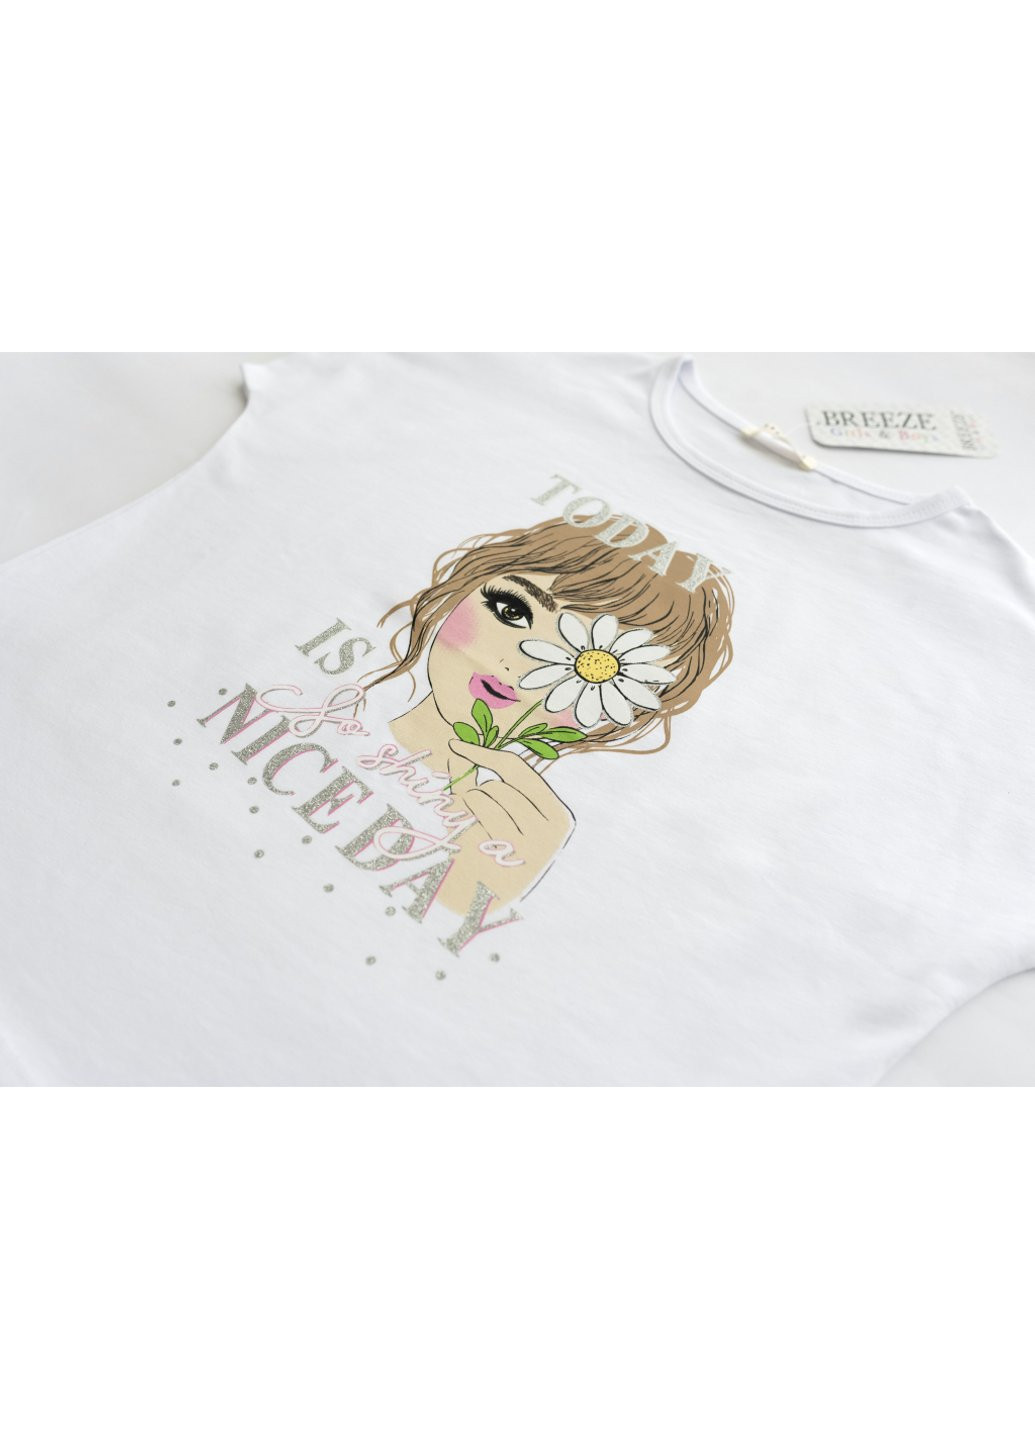 Комбинированная футболка детская с девочкой (17140-146g-white) Breeze